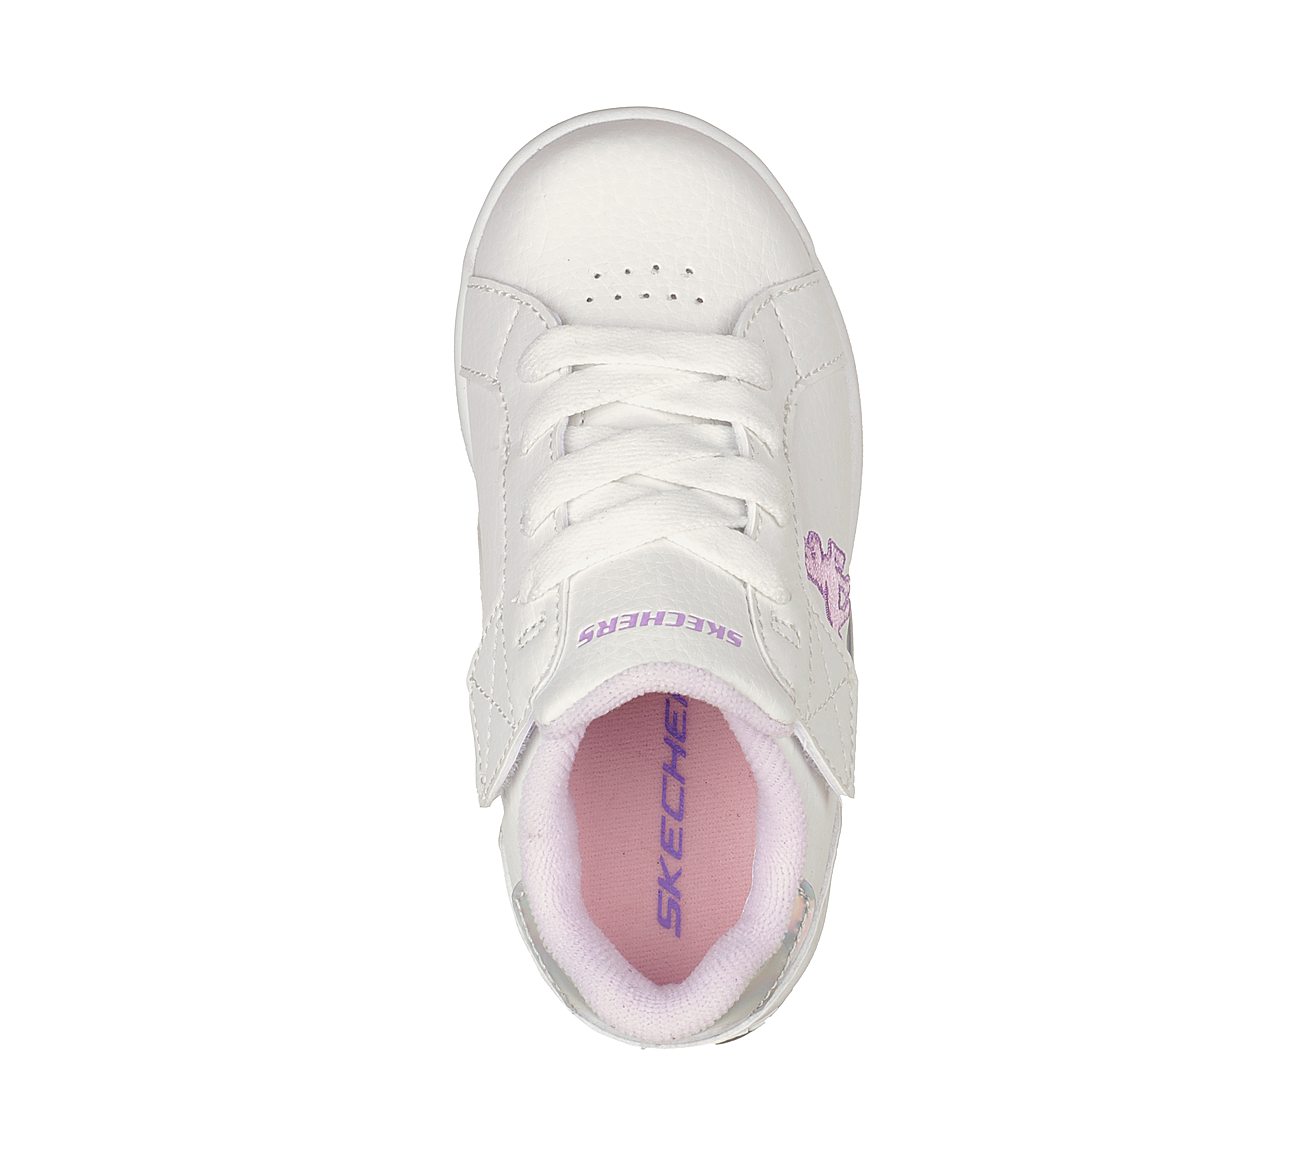 E-PRO-LIL UNICORN, WHITE/PINK Footwear Top View